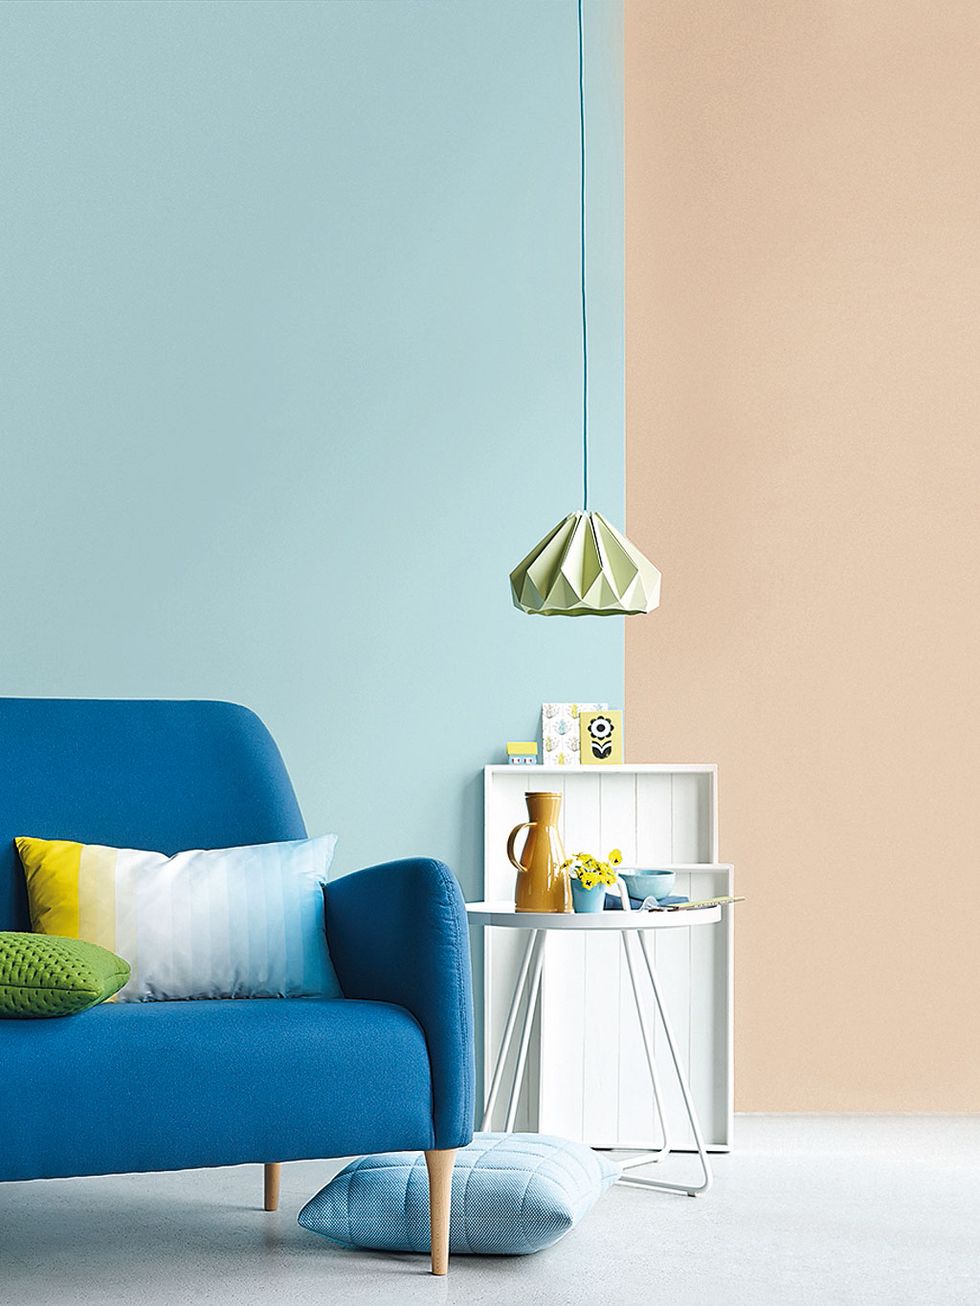 Cómo elegir colores para pintar muebles: criterios para darles personalidad